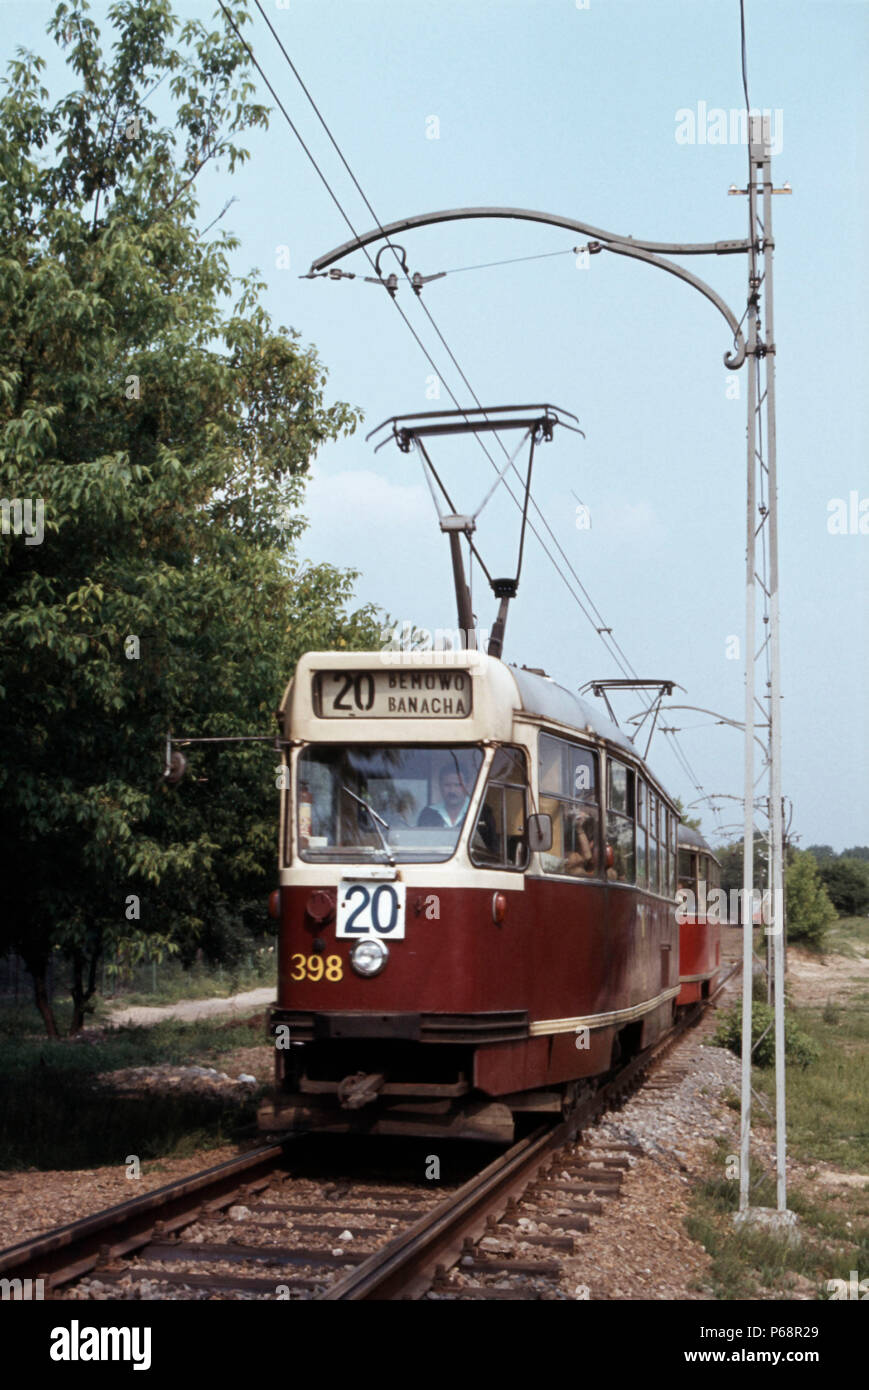 Varsavia tram n. 398 tele 20 di percorso attraverso i boschi del distretto Benmow venerdì 27 maggio 1983. Foto Stock